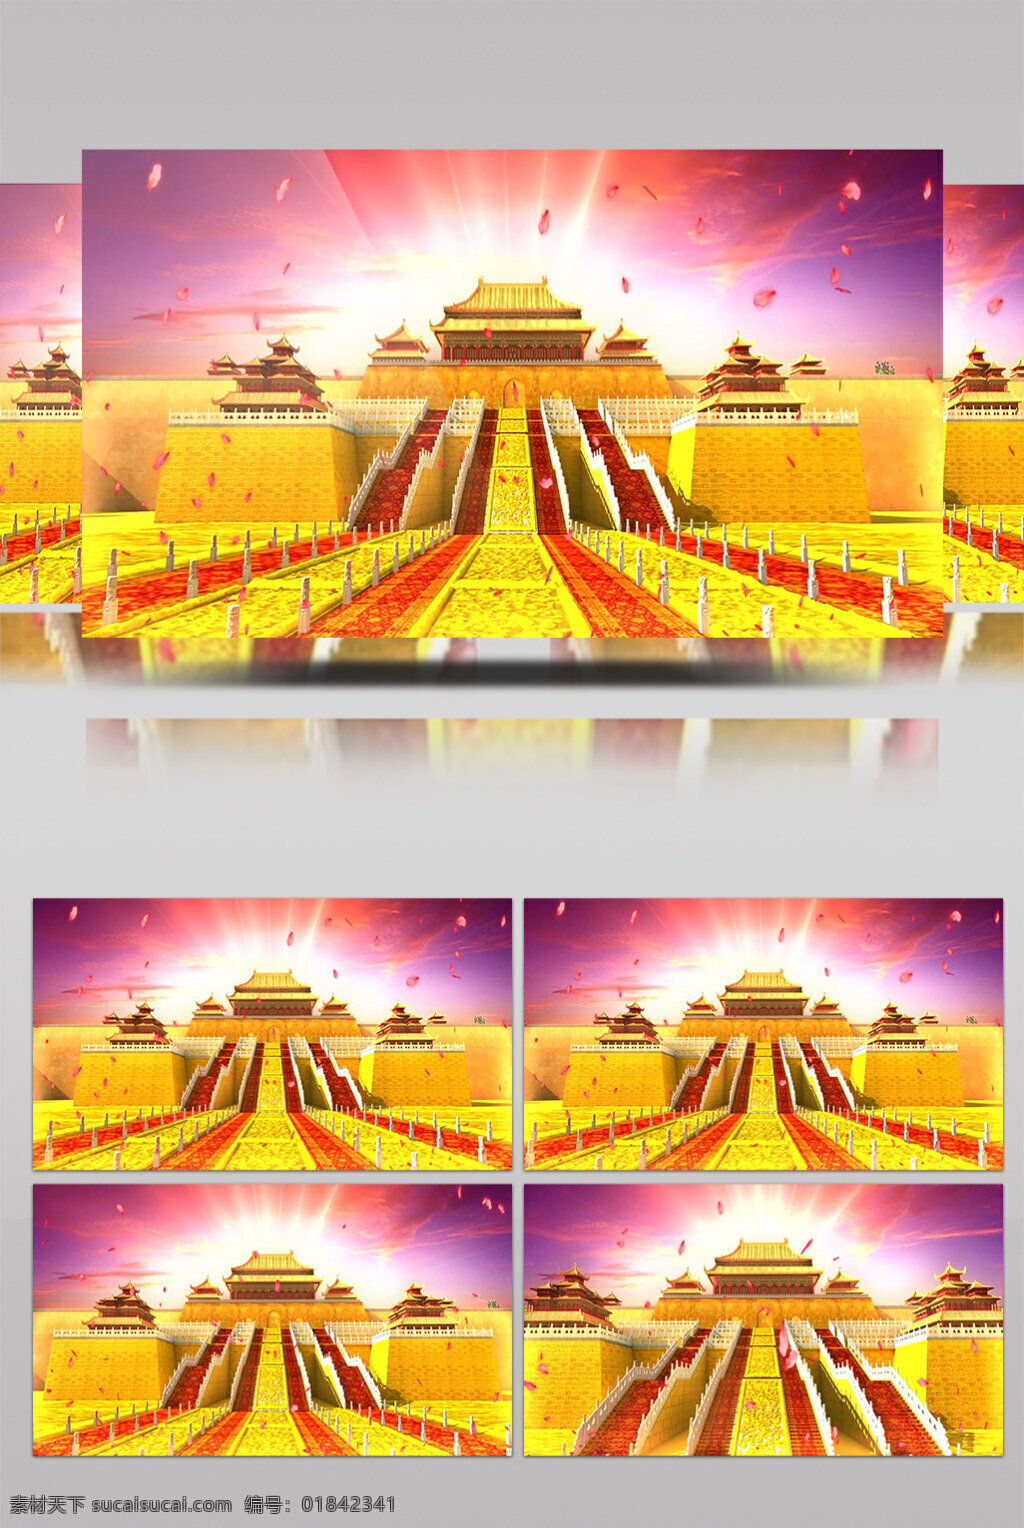 辉煌 建筑 视频 皇宫 生活抽象 画面意境 动态抽象 高清视频素材 广陵大殿